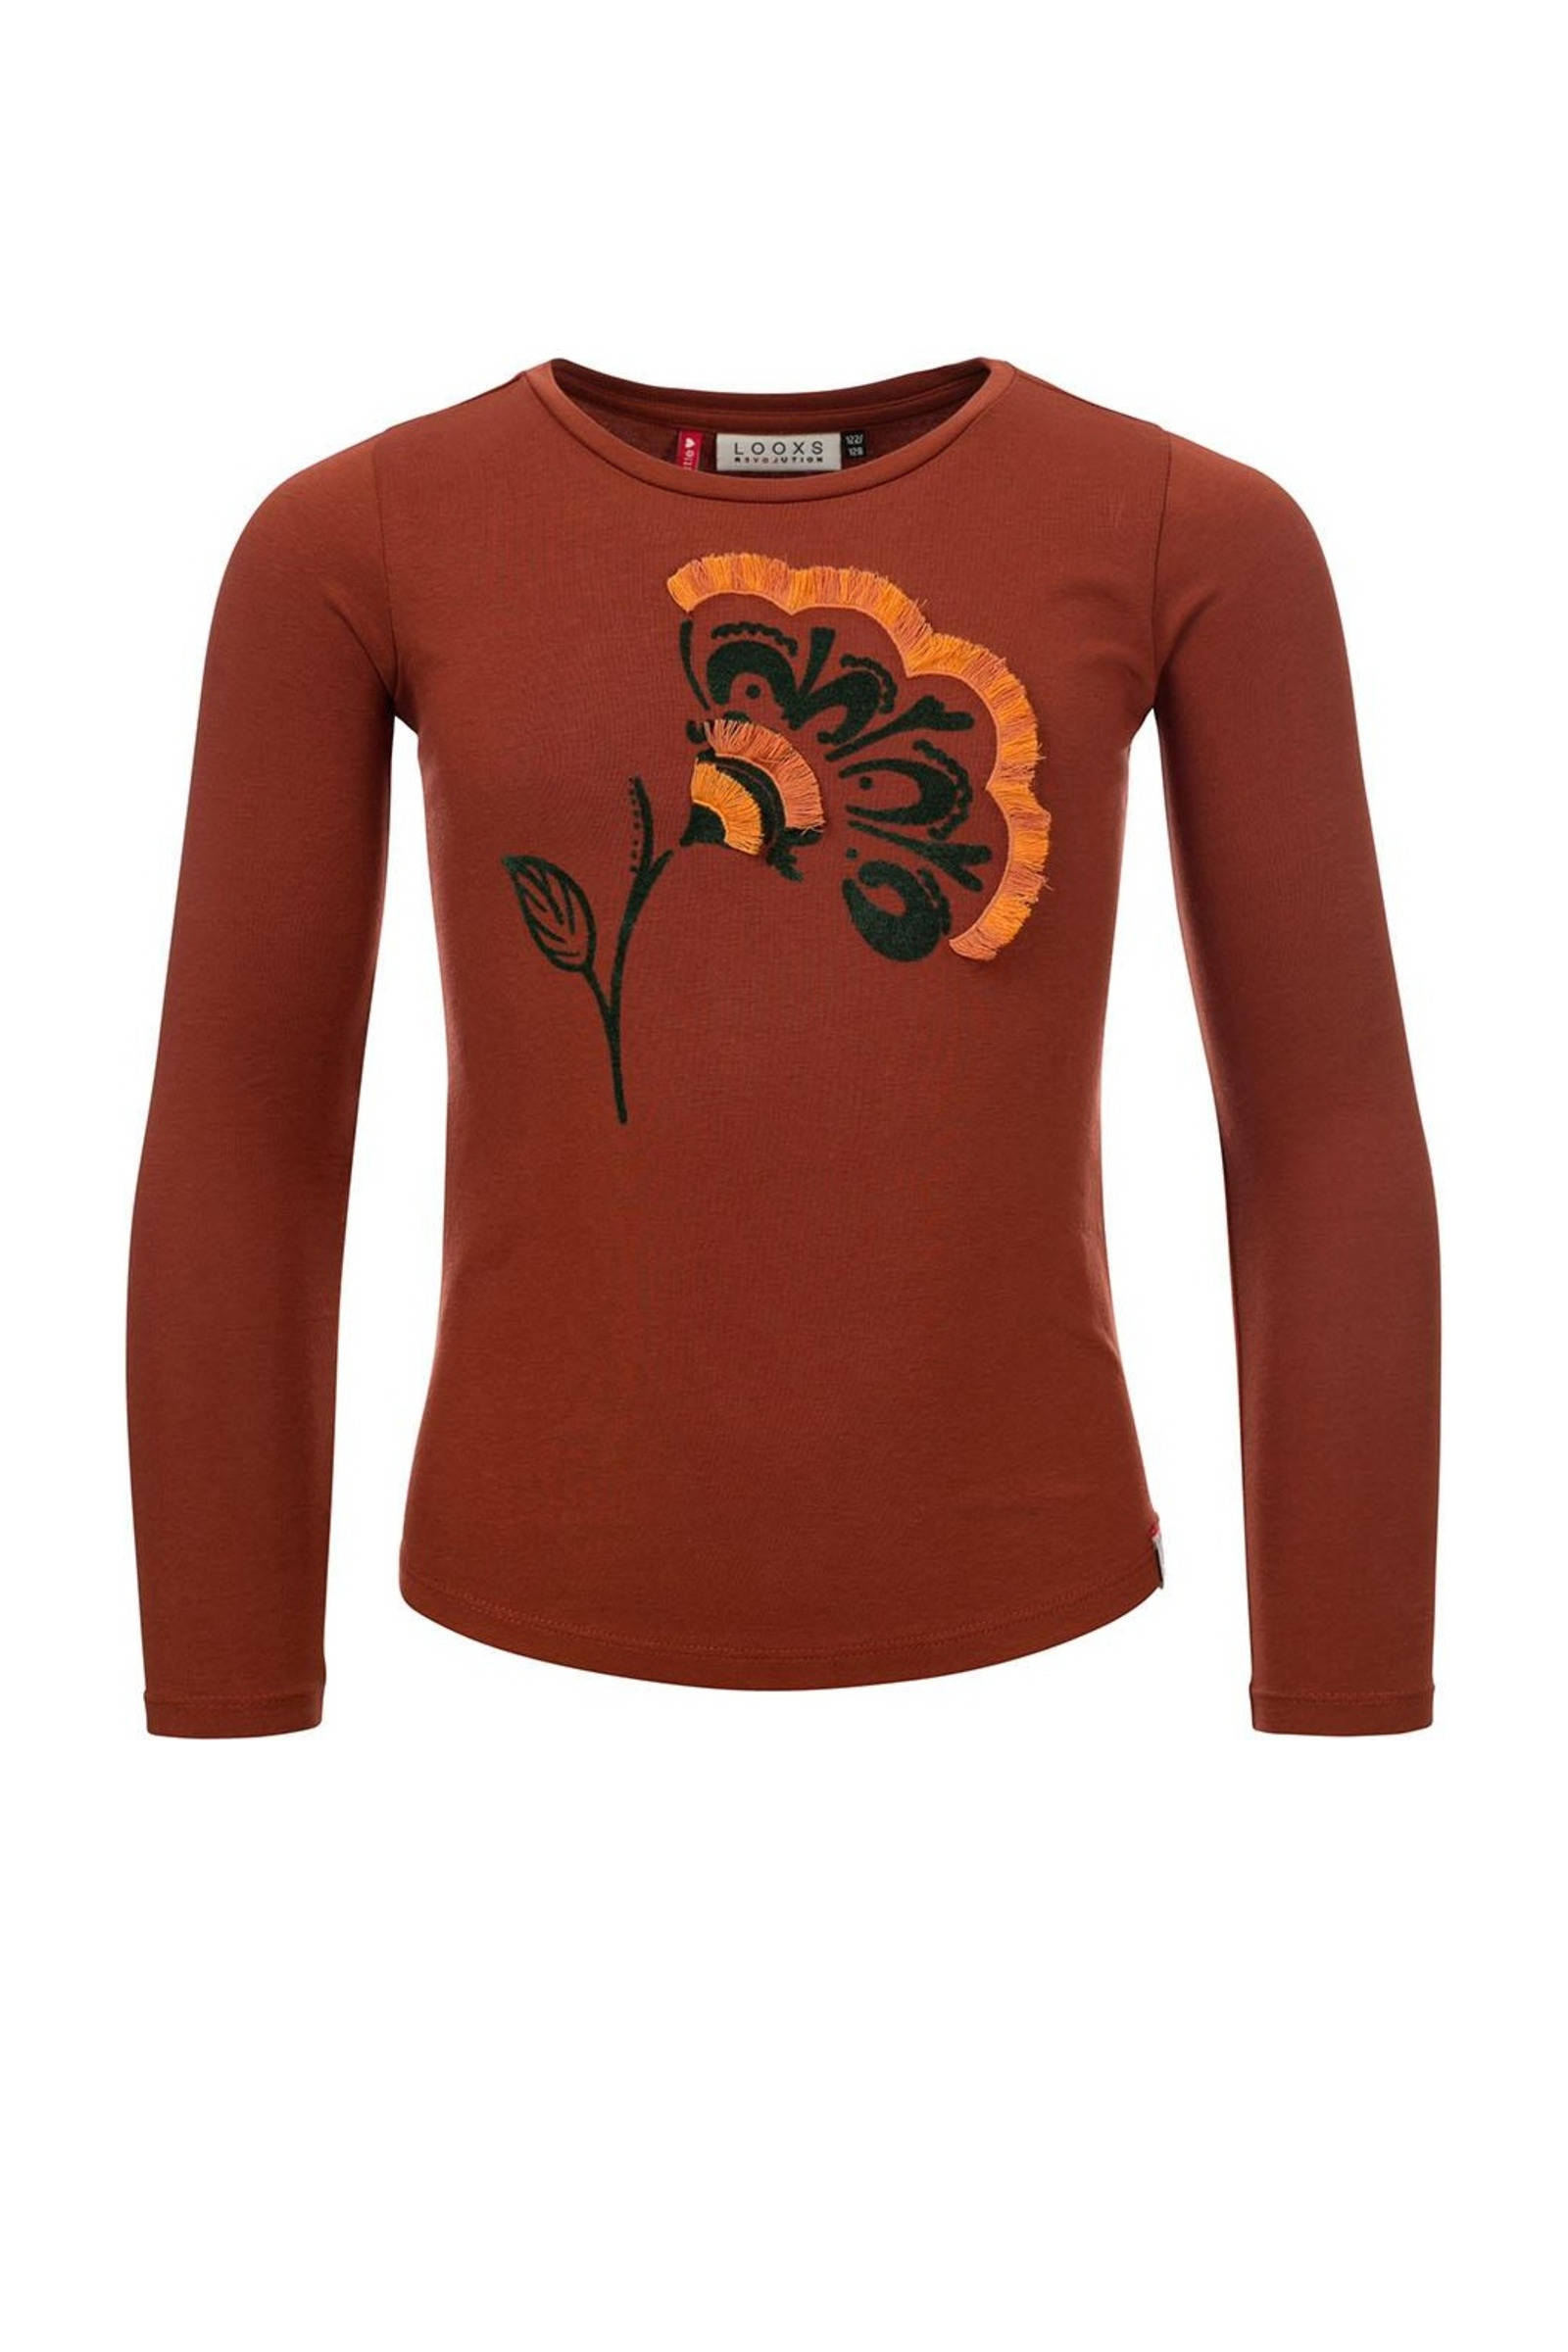 Looxs Revolution Slim fit t shirt bloem voor meisjes in de kleur online kopen